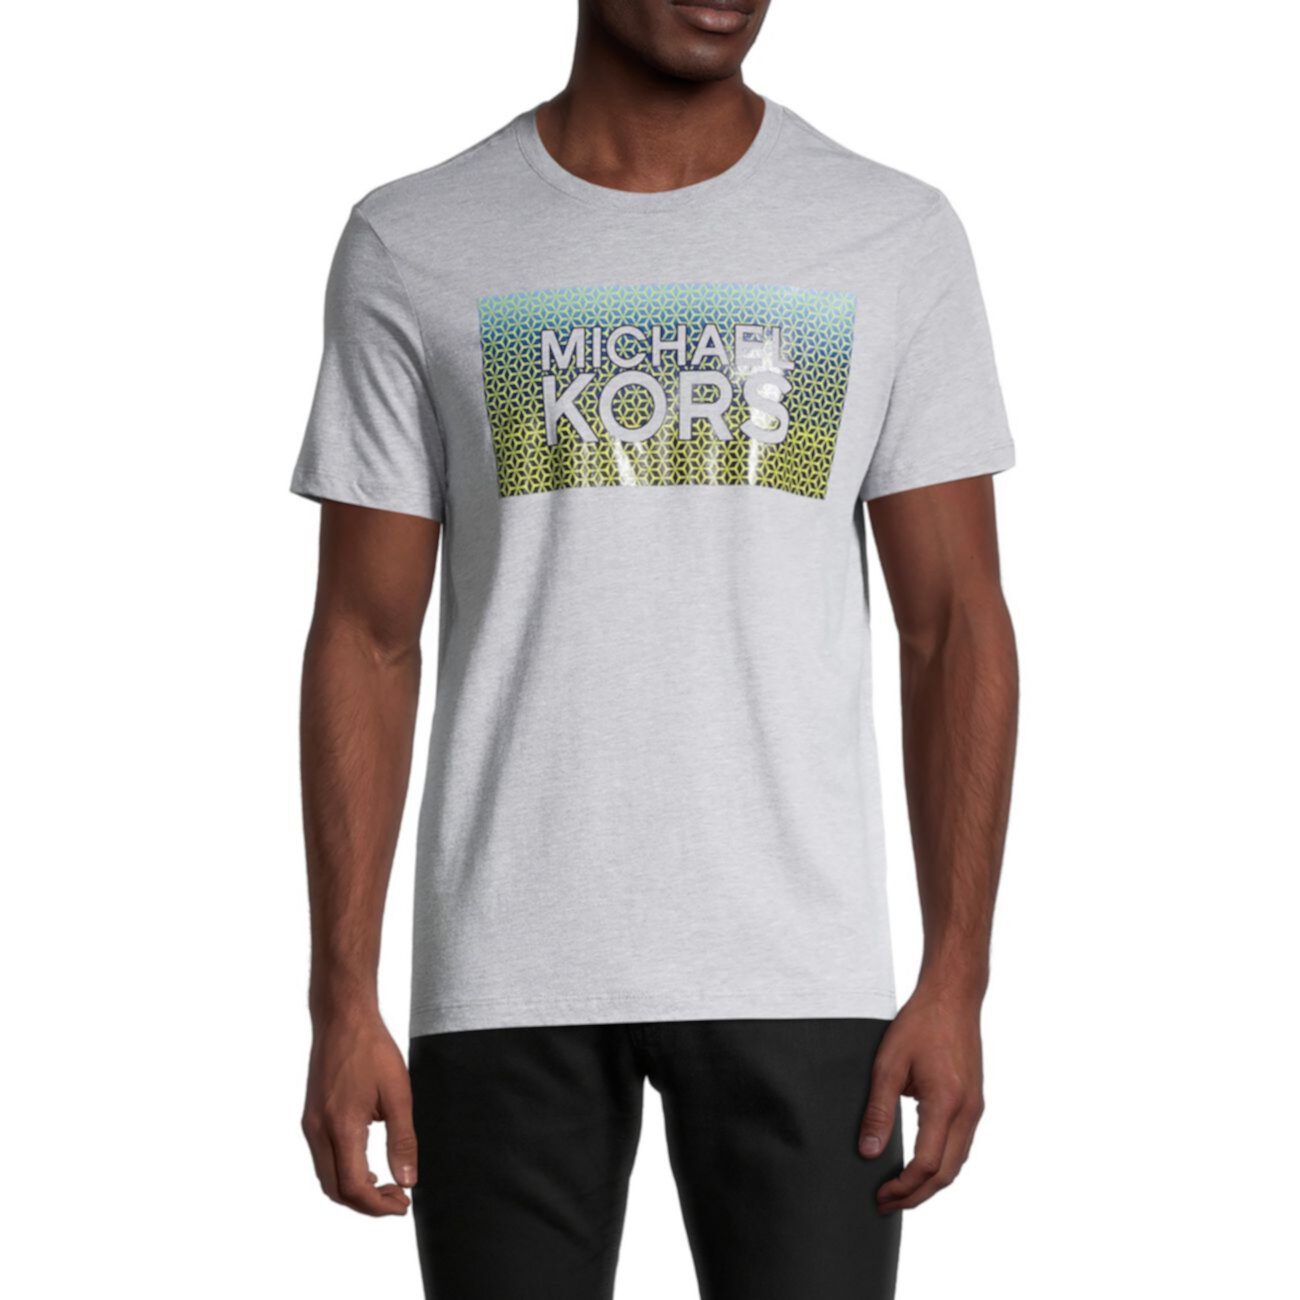 Футболка с графическим логотипом Michael Kors